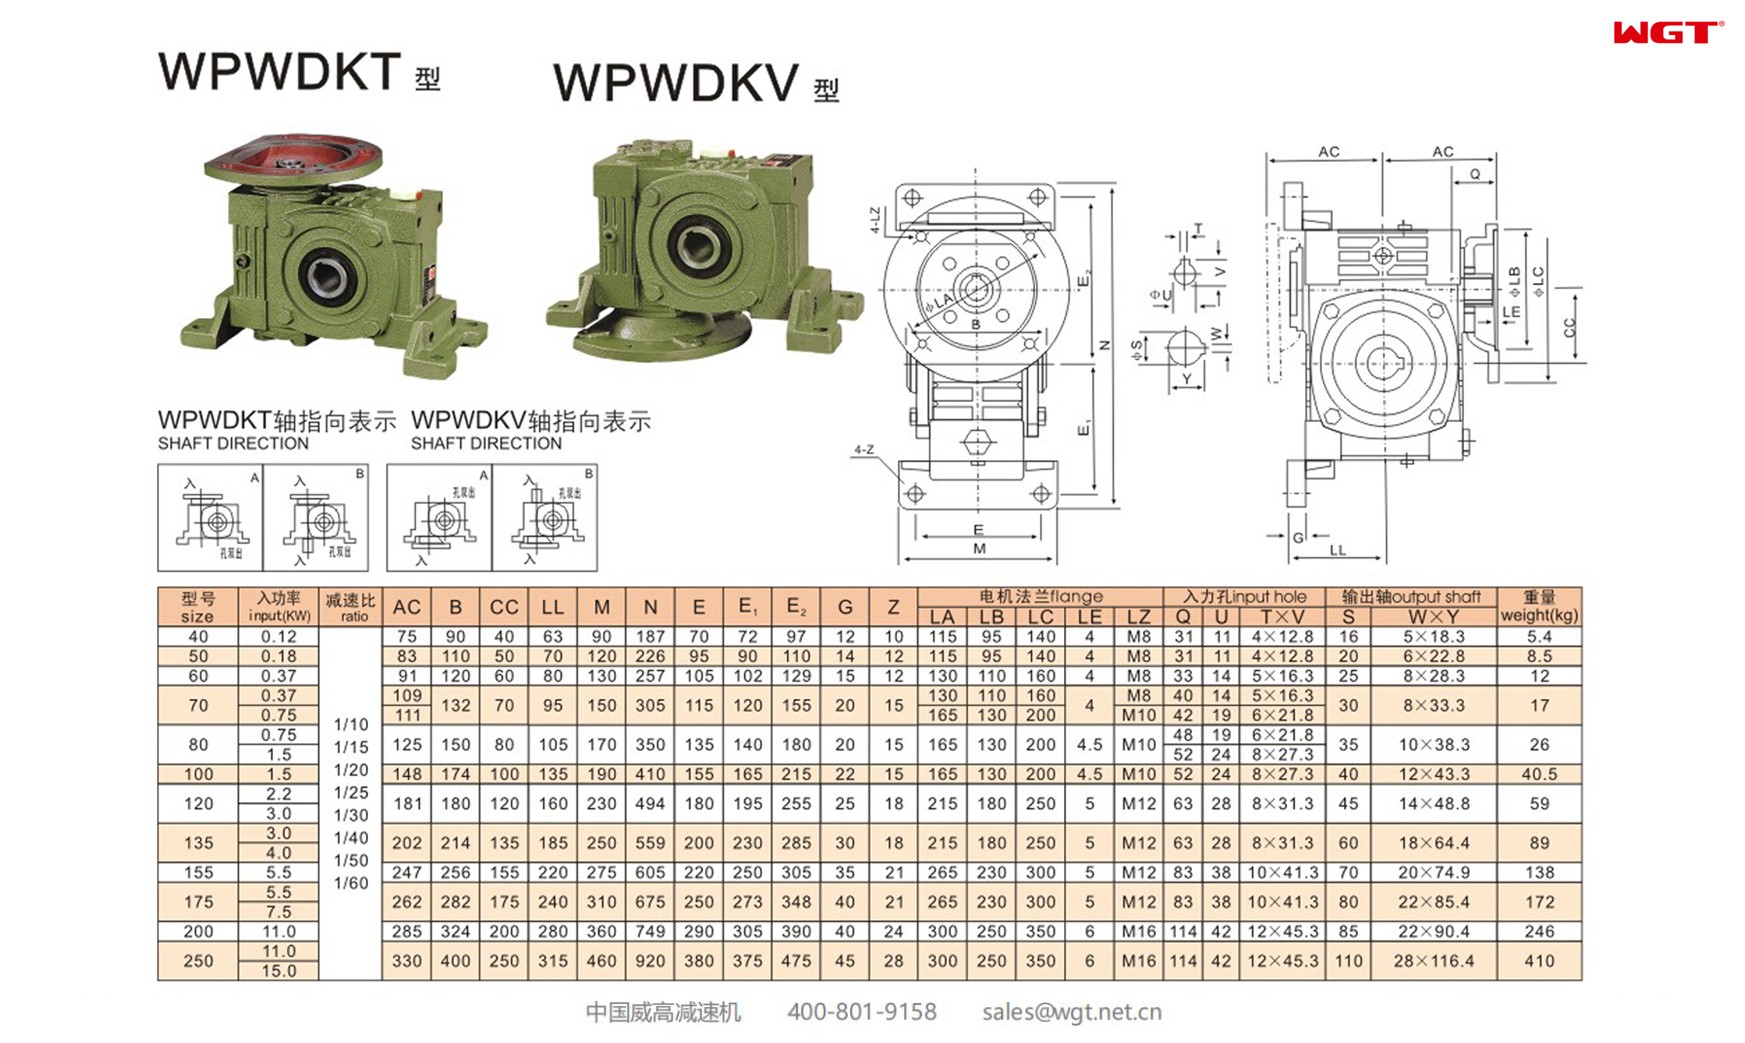 WPWDKV250 worm gear reducer universal speed reducer 